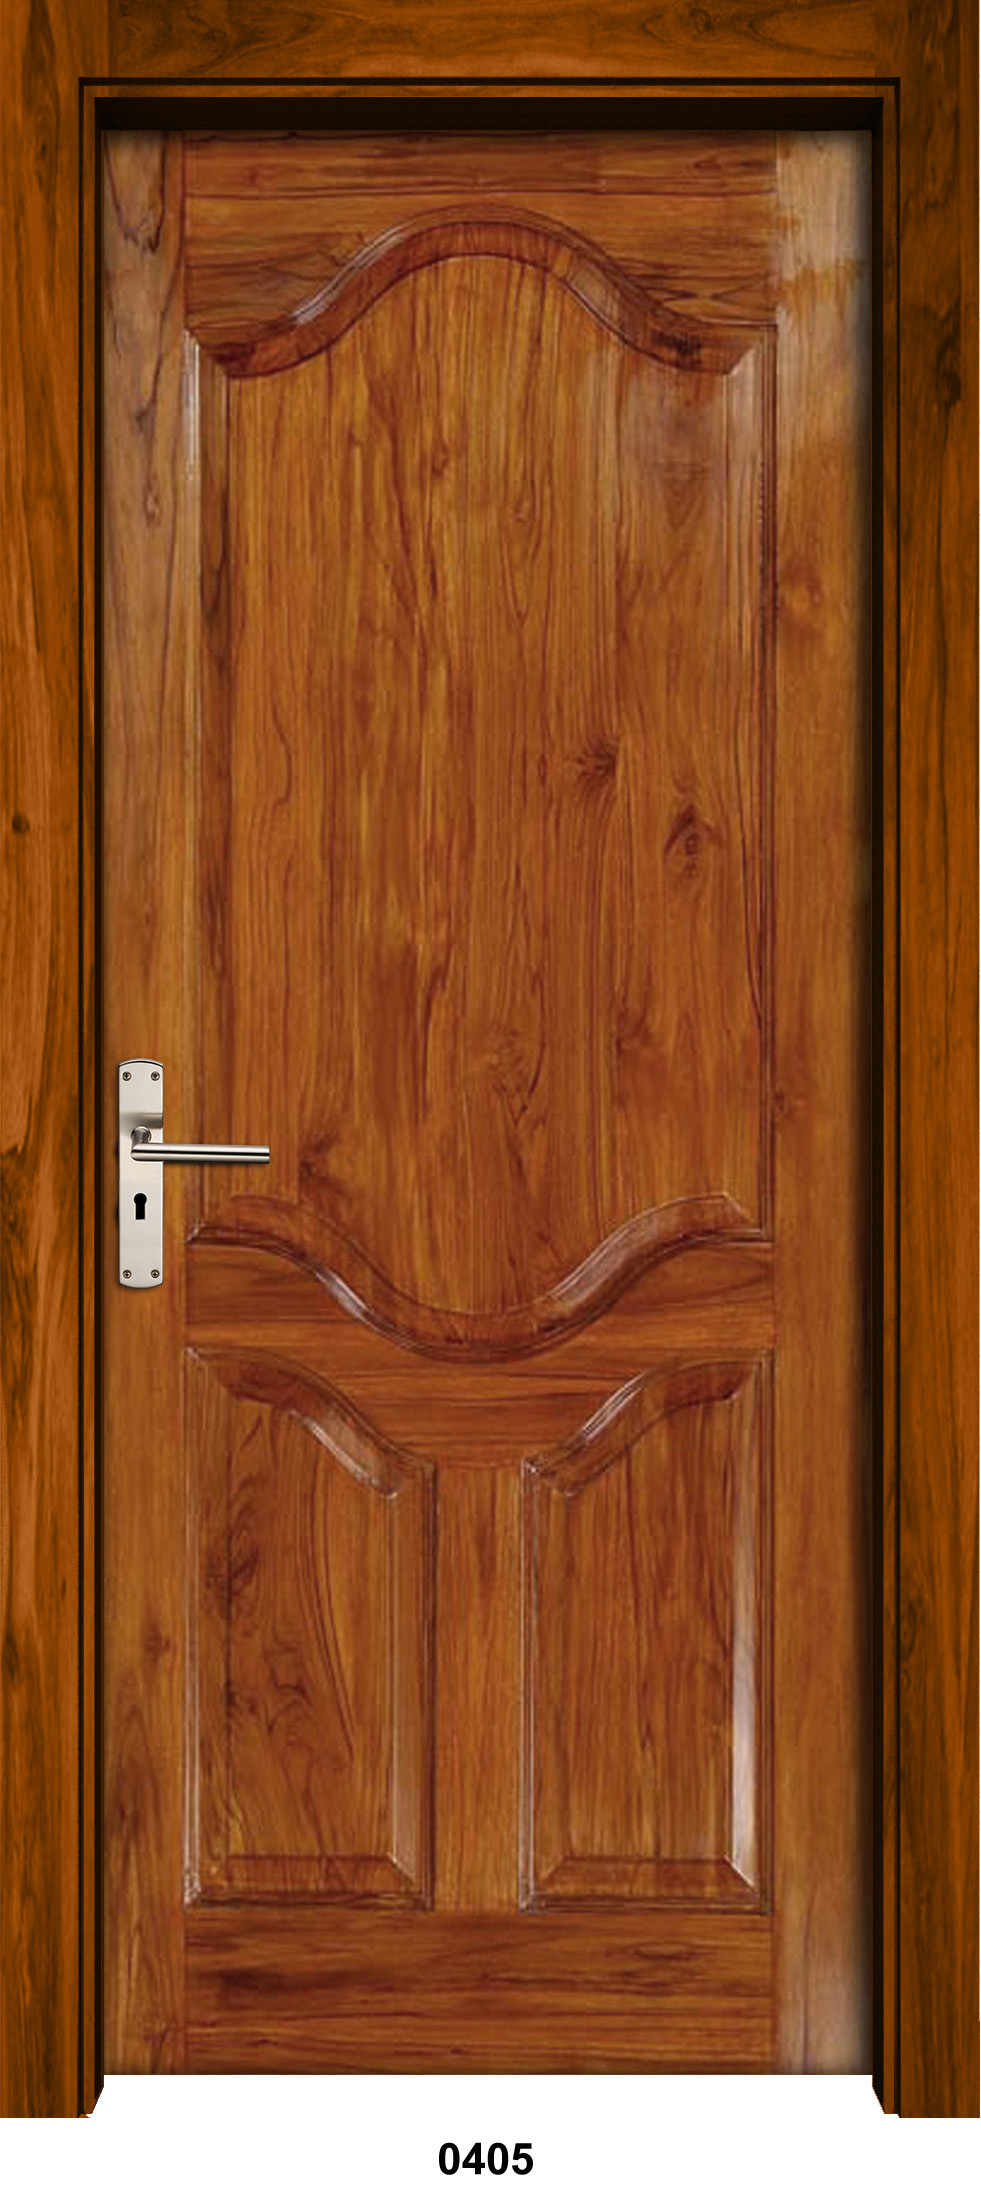 Solid Wood Doors In Delhi Ncr, Wooden Door Cost